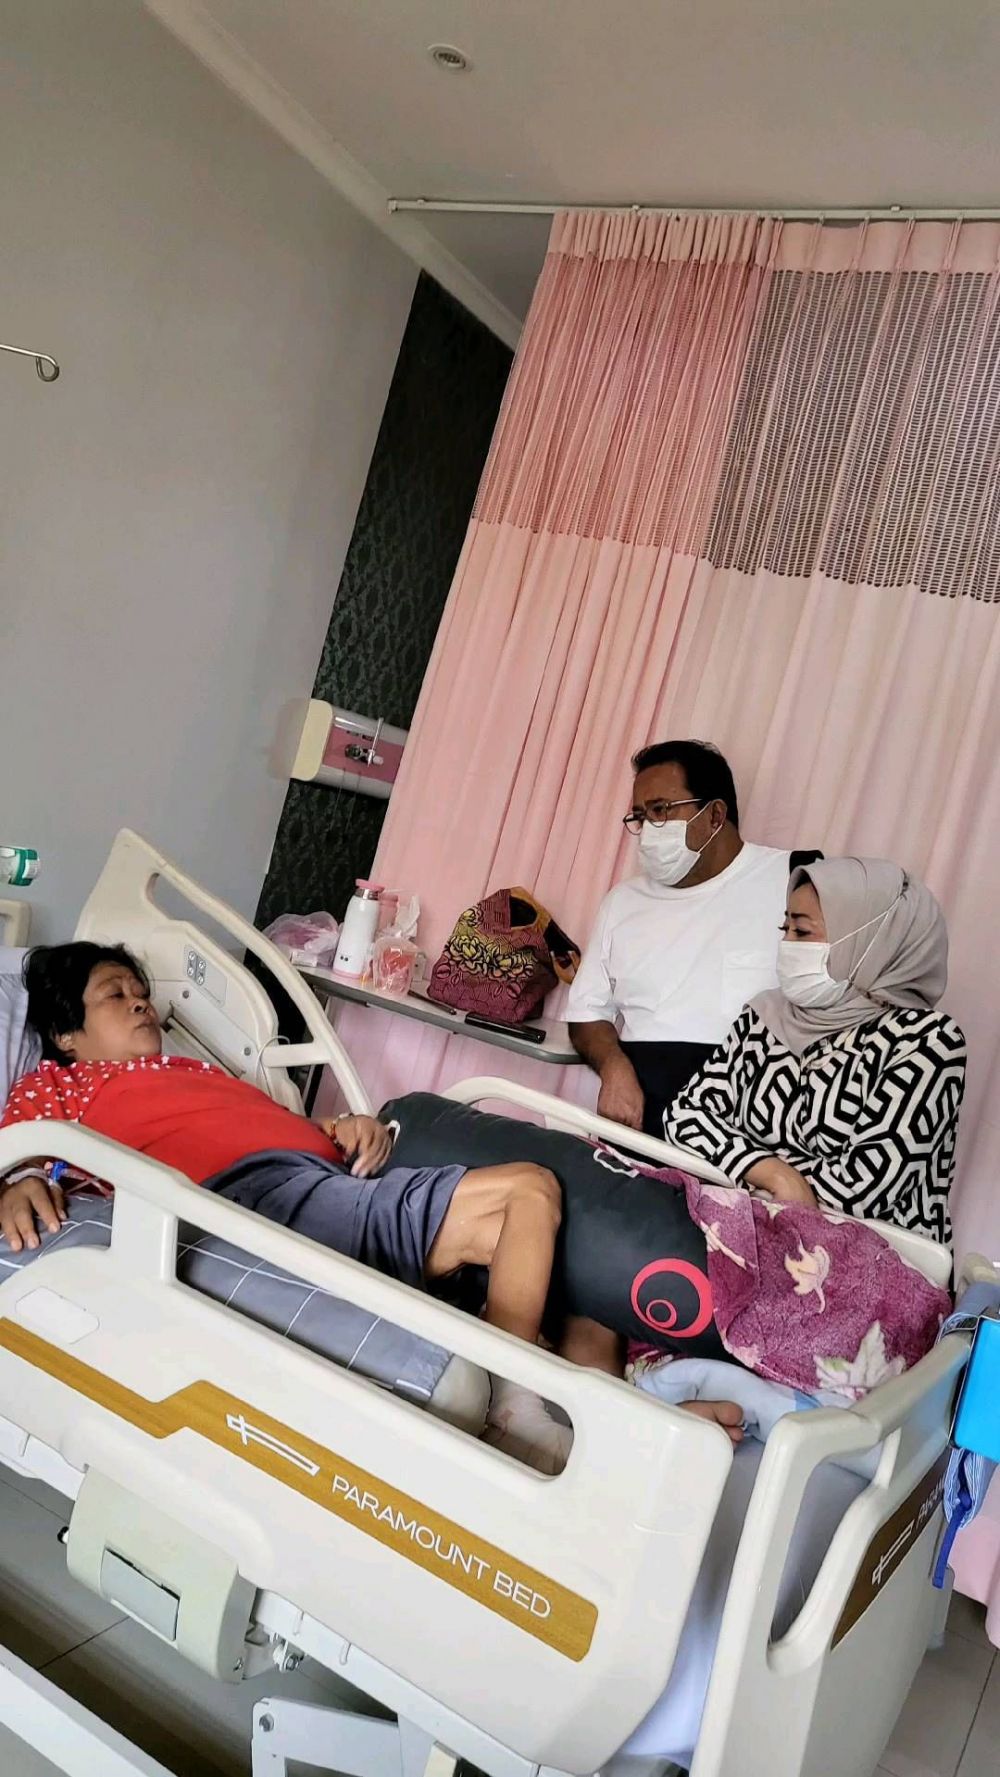 Suti Karno dilarikan ke rumah sakit, badan kurus terbaring di kasur